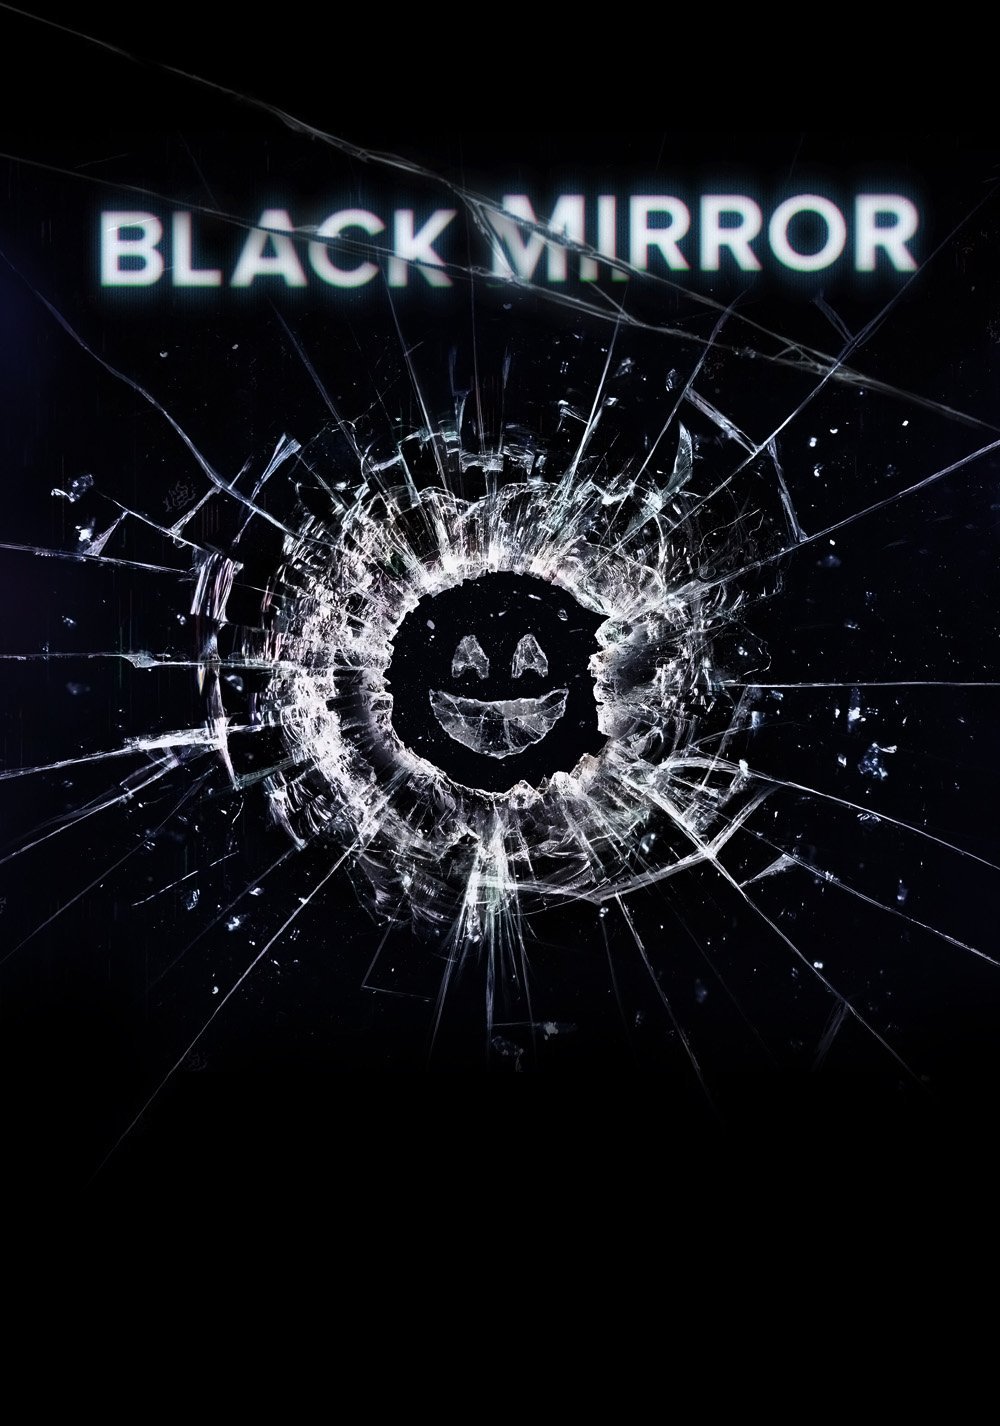 შავი სარკე სეზონი 4 / Black Mirror Season 4 ქართულად